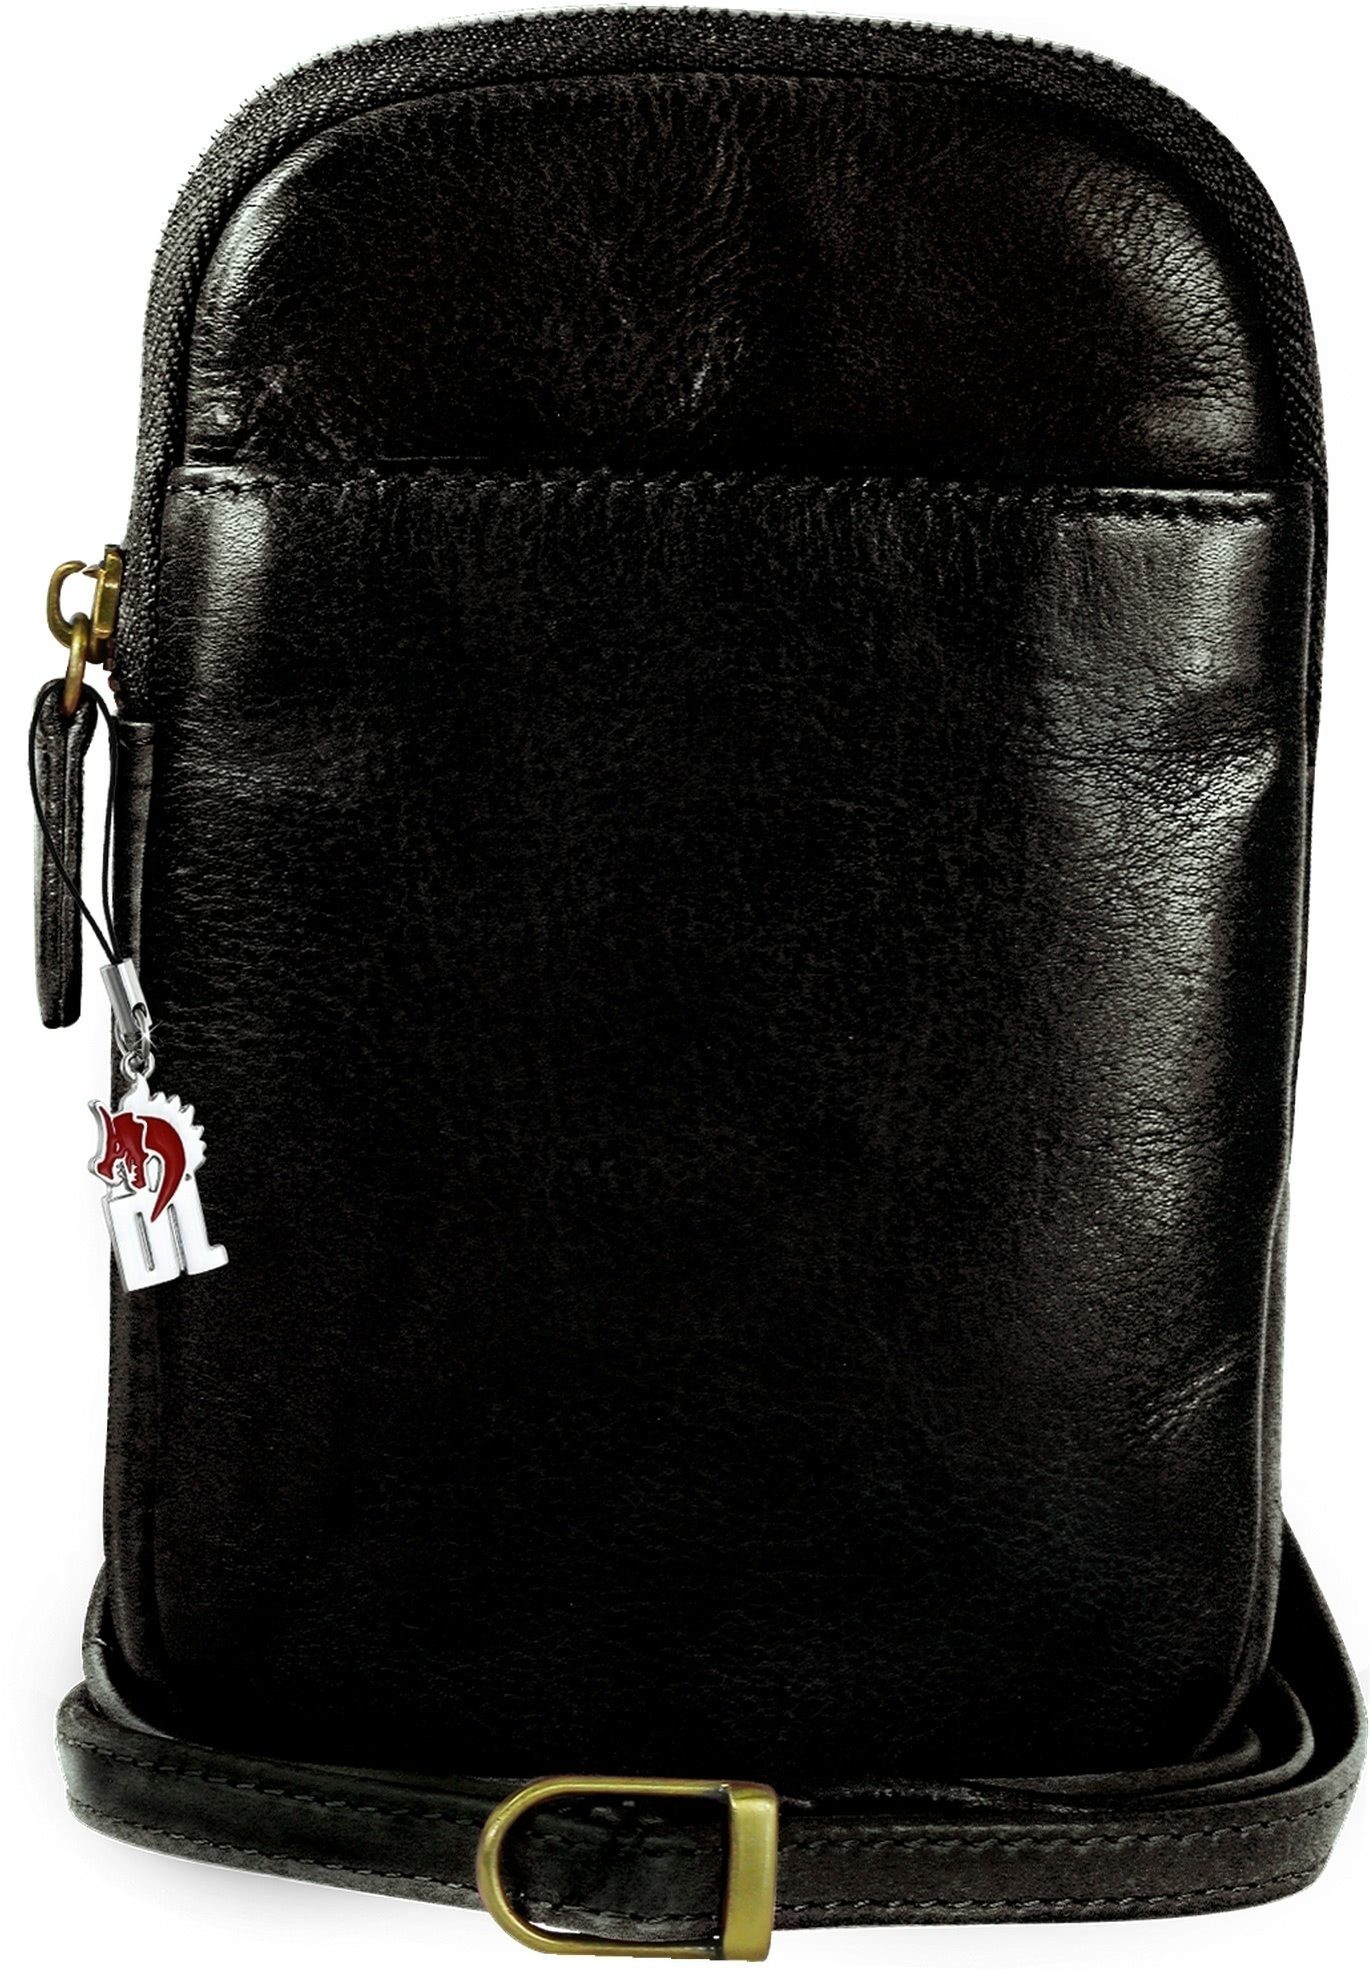 DrachenLeder Umhängetasche DrachenLeder Tasche Damen Handtasche (Umhängetasche, Umhängetasche), unisex Handtasche, Umhängetasche Echtleder schwarz, Größe ca. 13cm